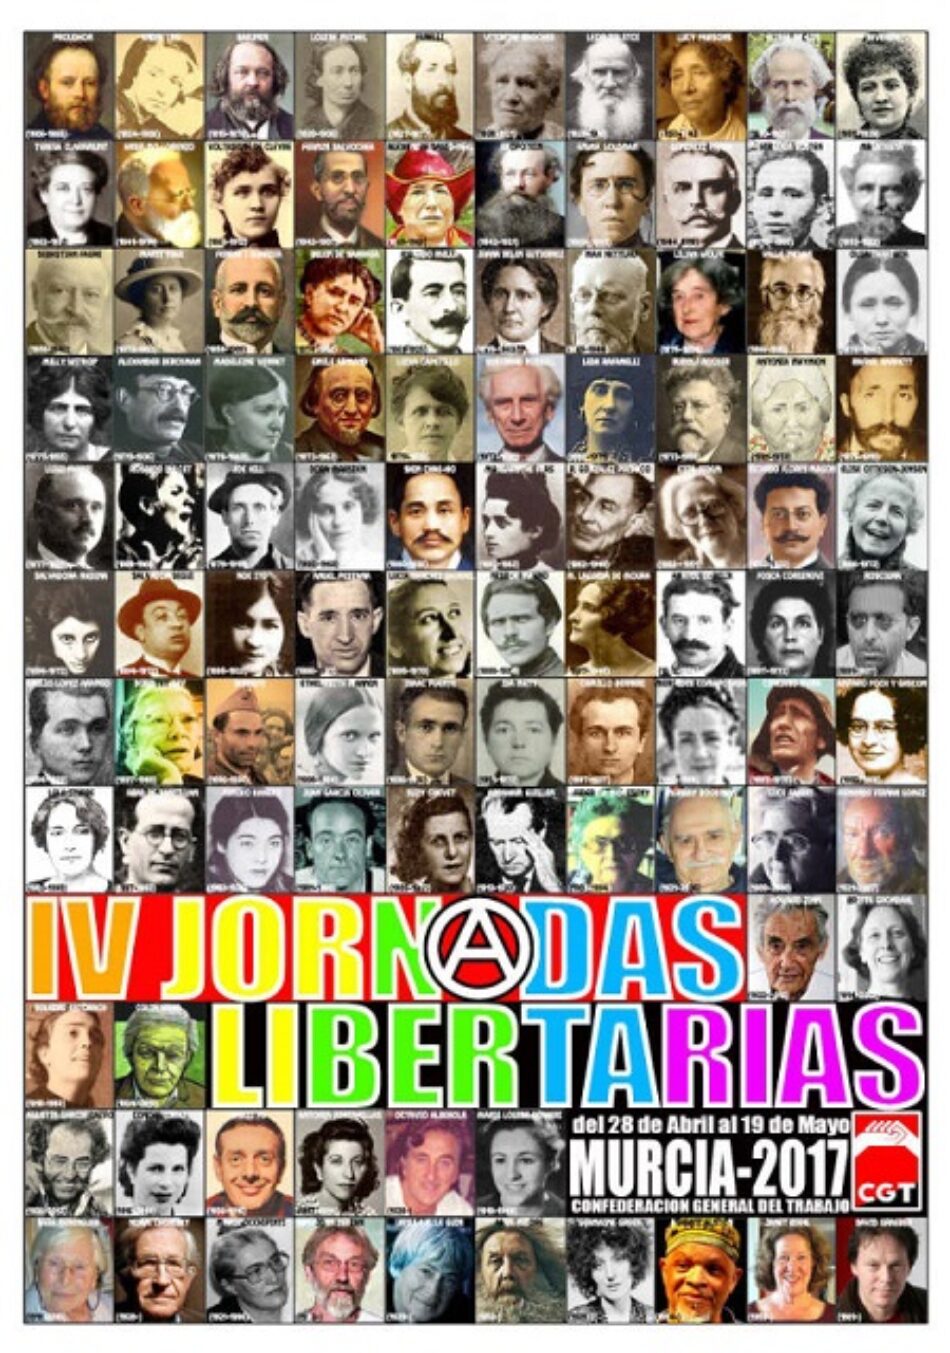 IV Jornadas Libertarias en Murcia: del 28 de abril al 19 de mayo